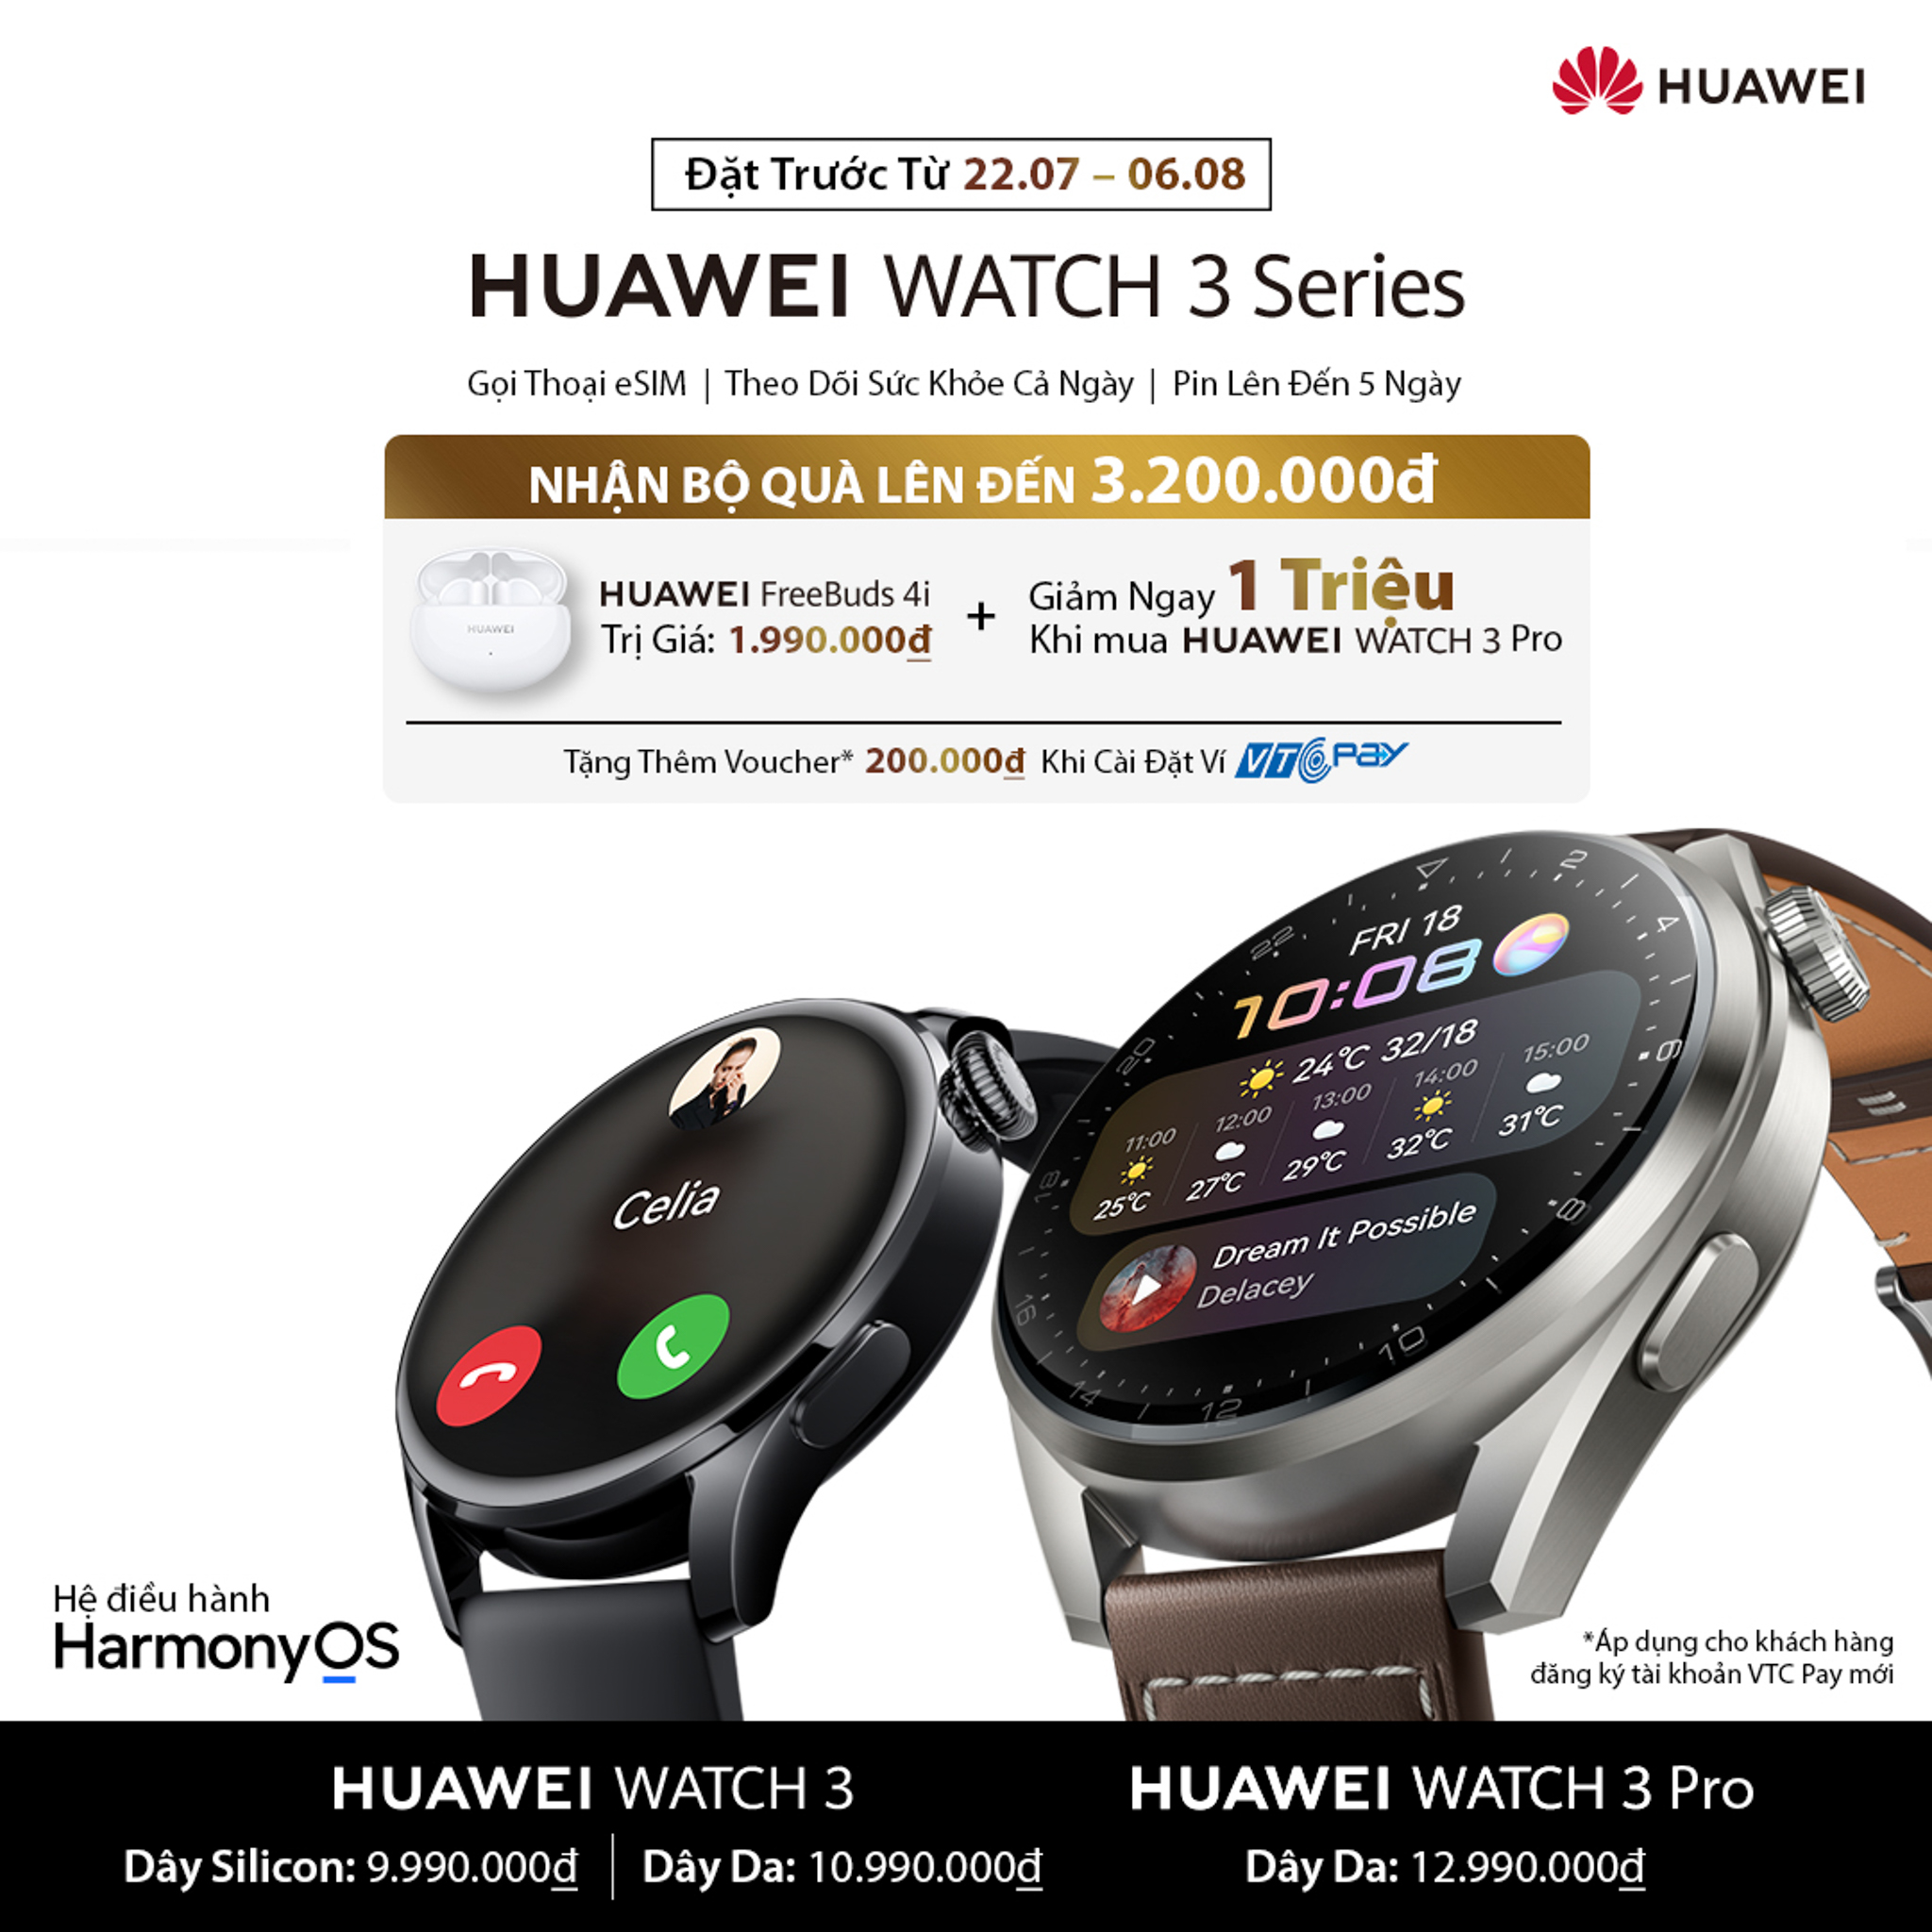 Huawei giới thiệu HUAWEI Watch 3 và HUAWEI Watch 3 Pro tại Việt Nam